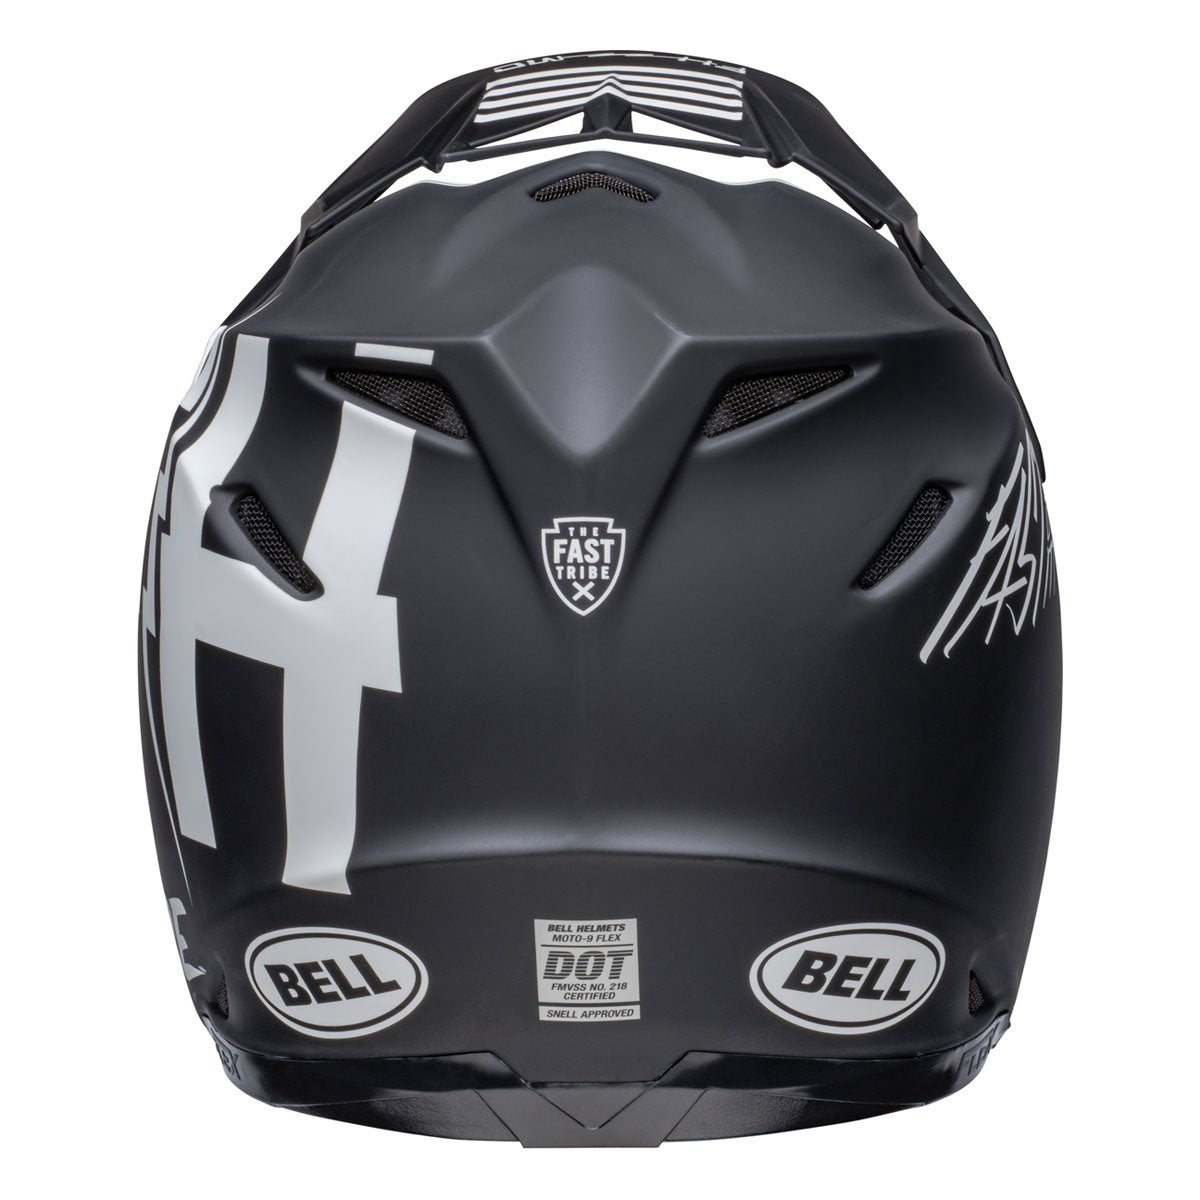 Bell Fasthouse Tribe Moto 9S Helmet - Matte/Gloss Black/White